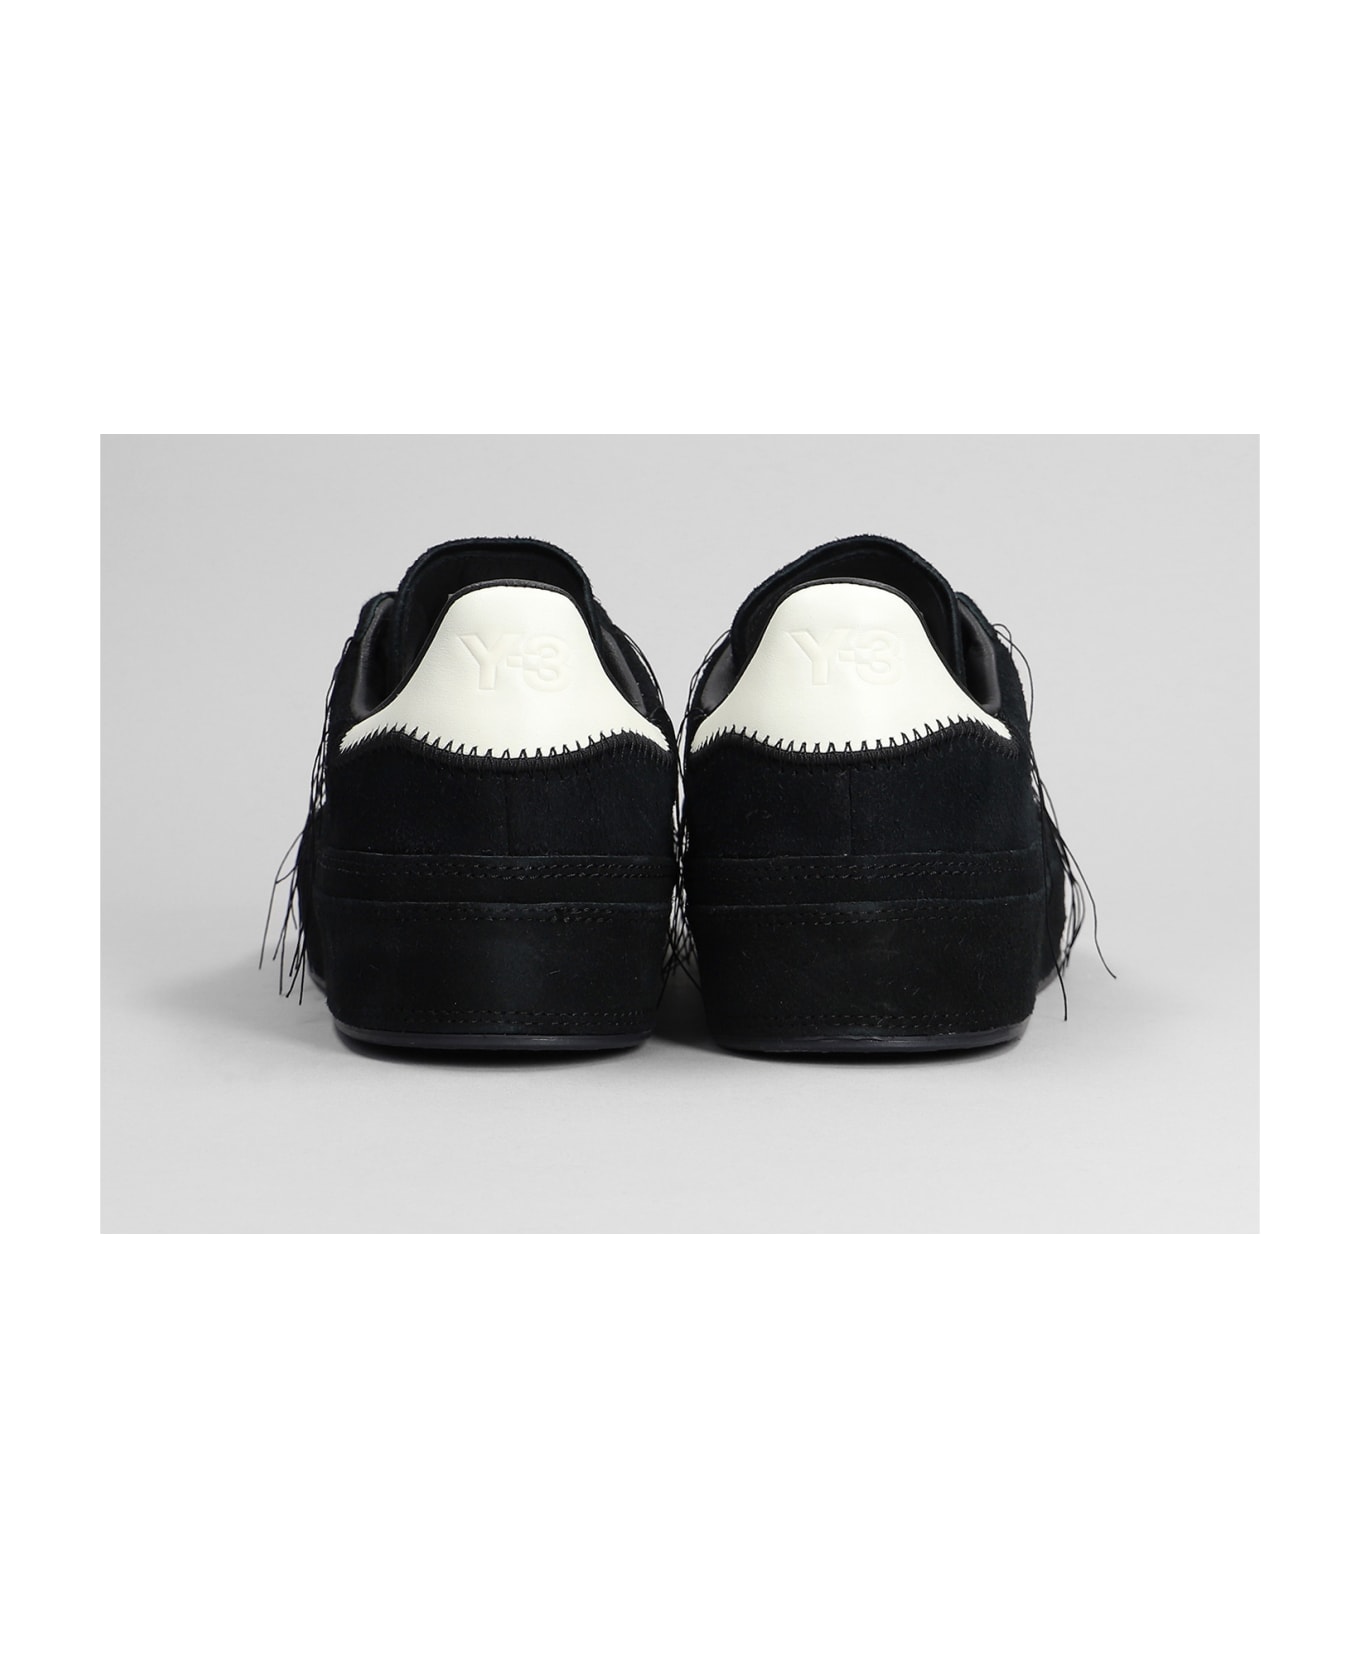 Y-3 Gazelle Sneakers In Black Suede - Black